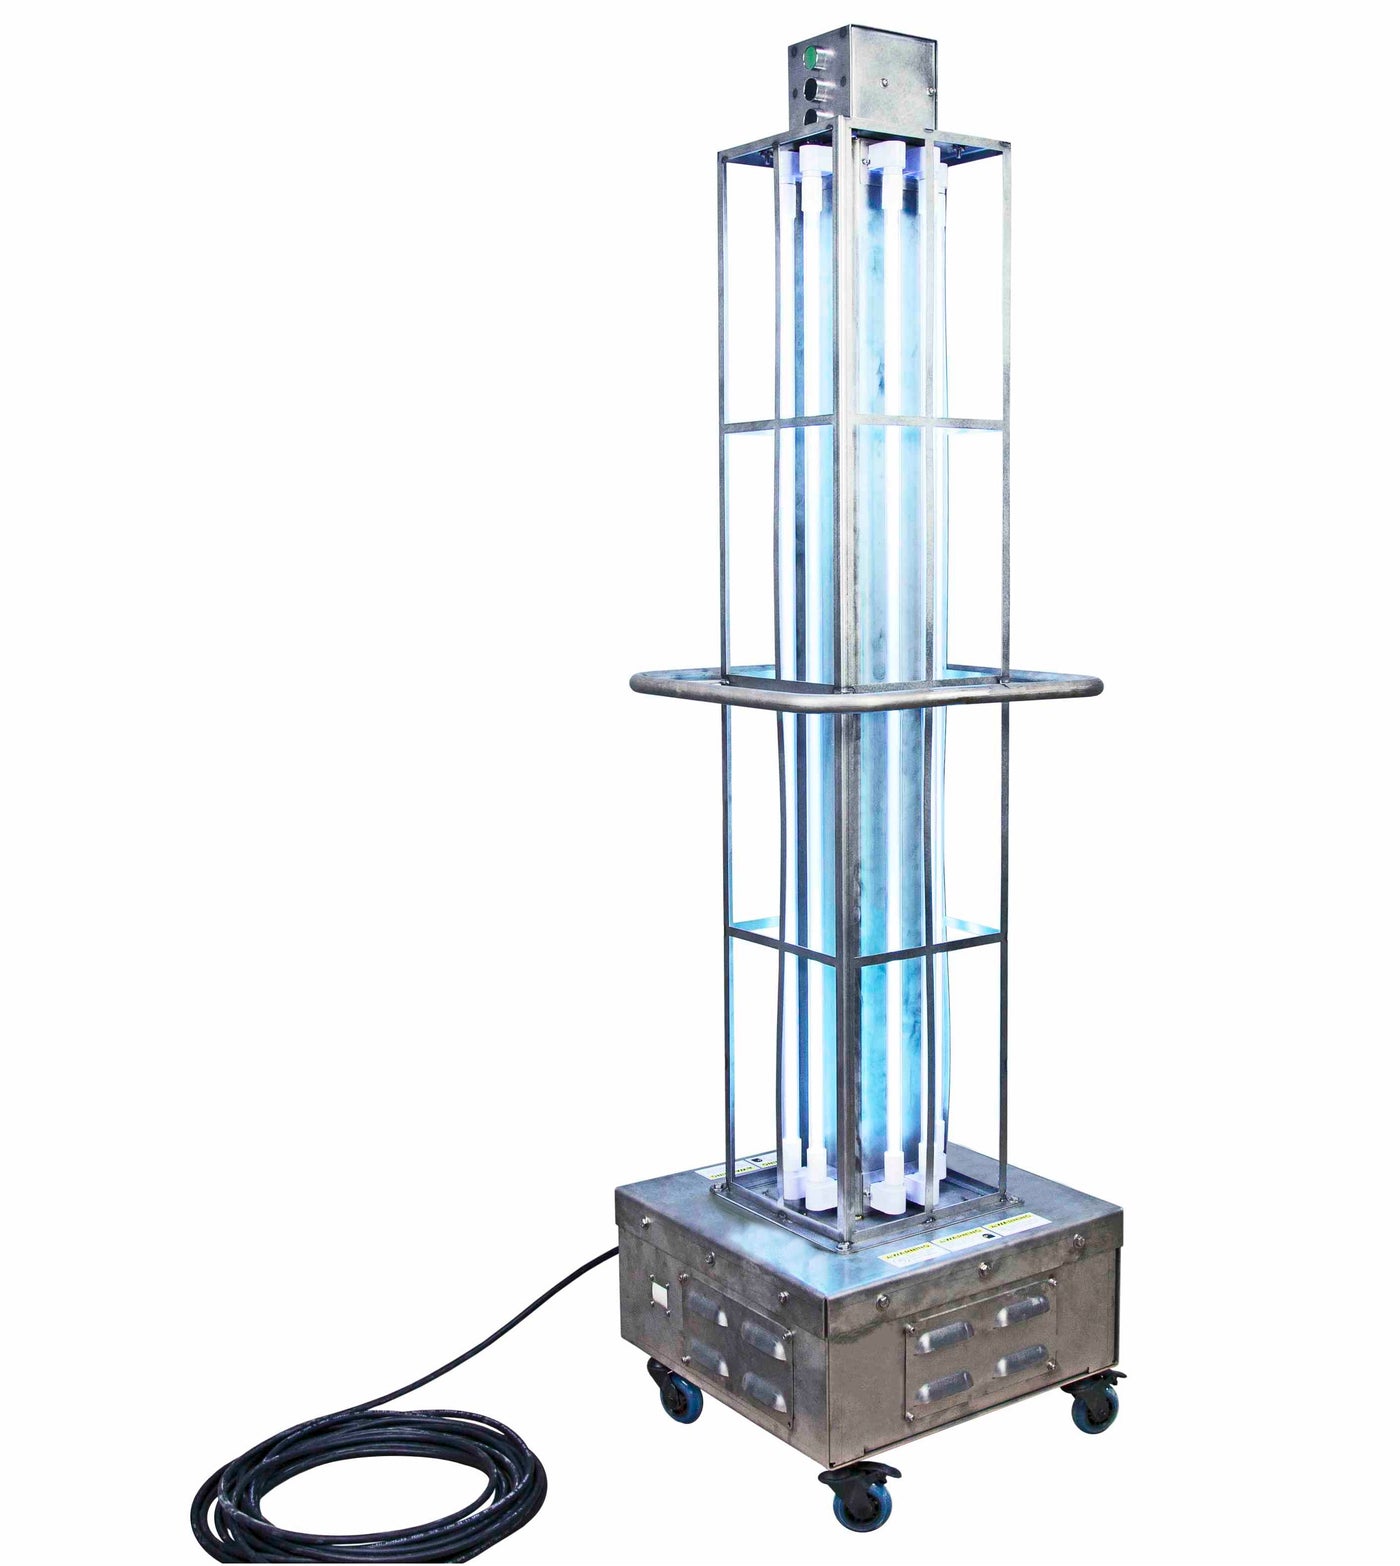 Industrial UV Sanitation Light, 16 Lamps, 576 Watts, 120V